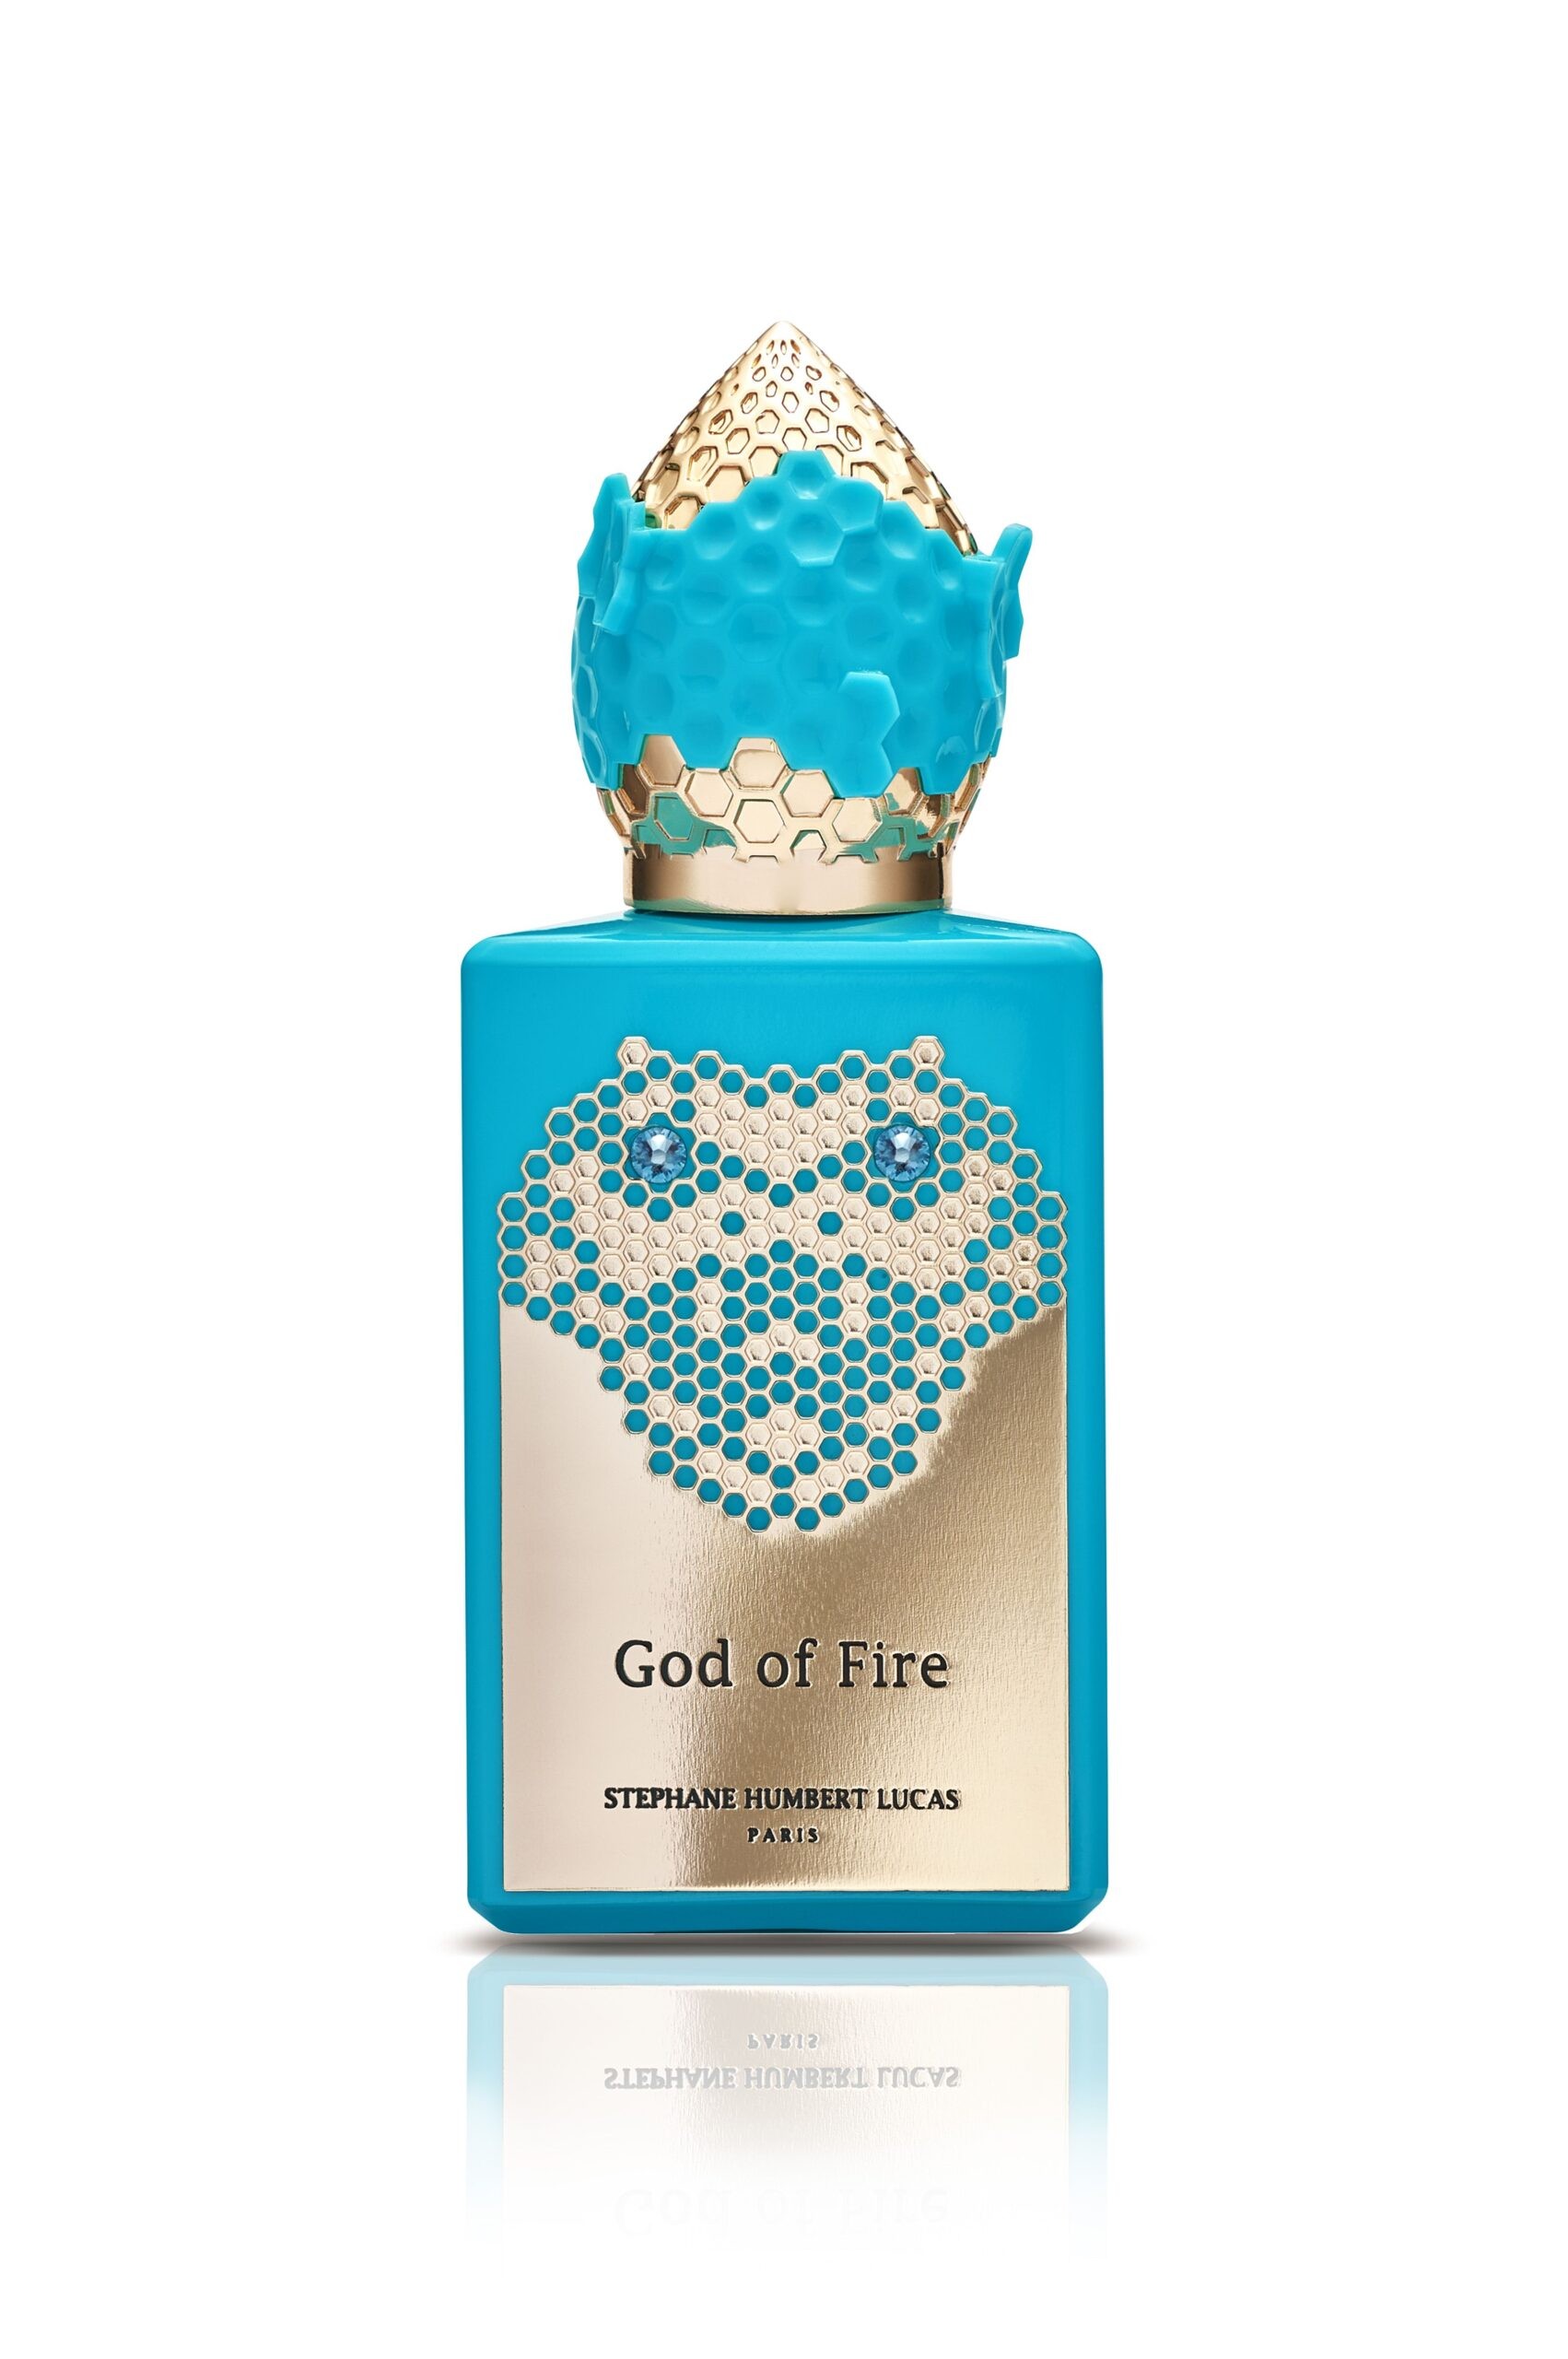 Stephane Humbert Lucas God of Fire - Snake Collection 50ml Eau de Parfum